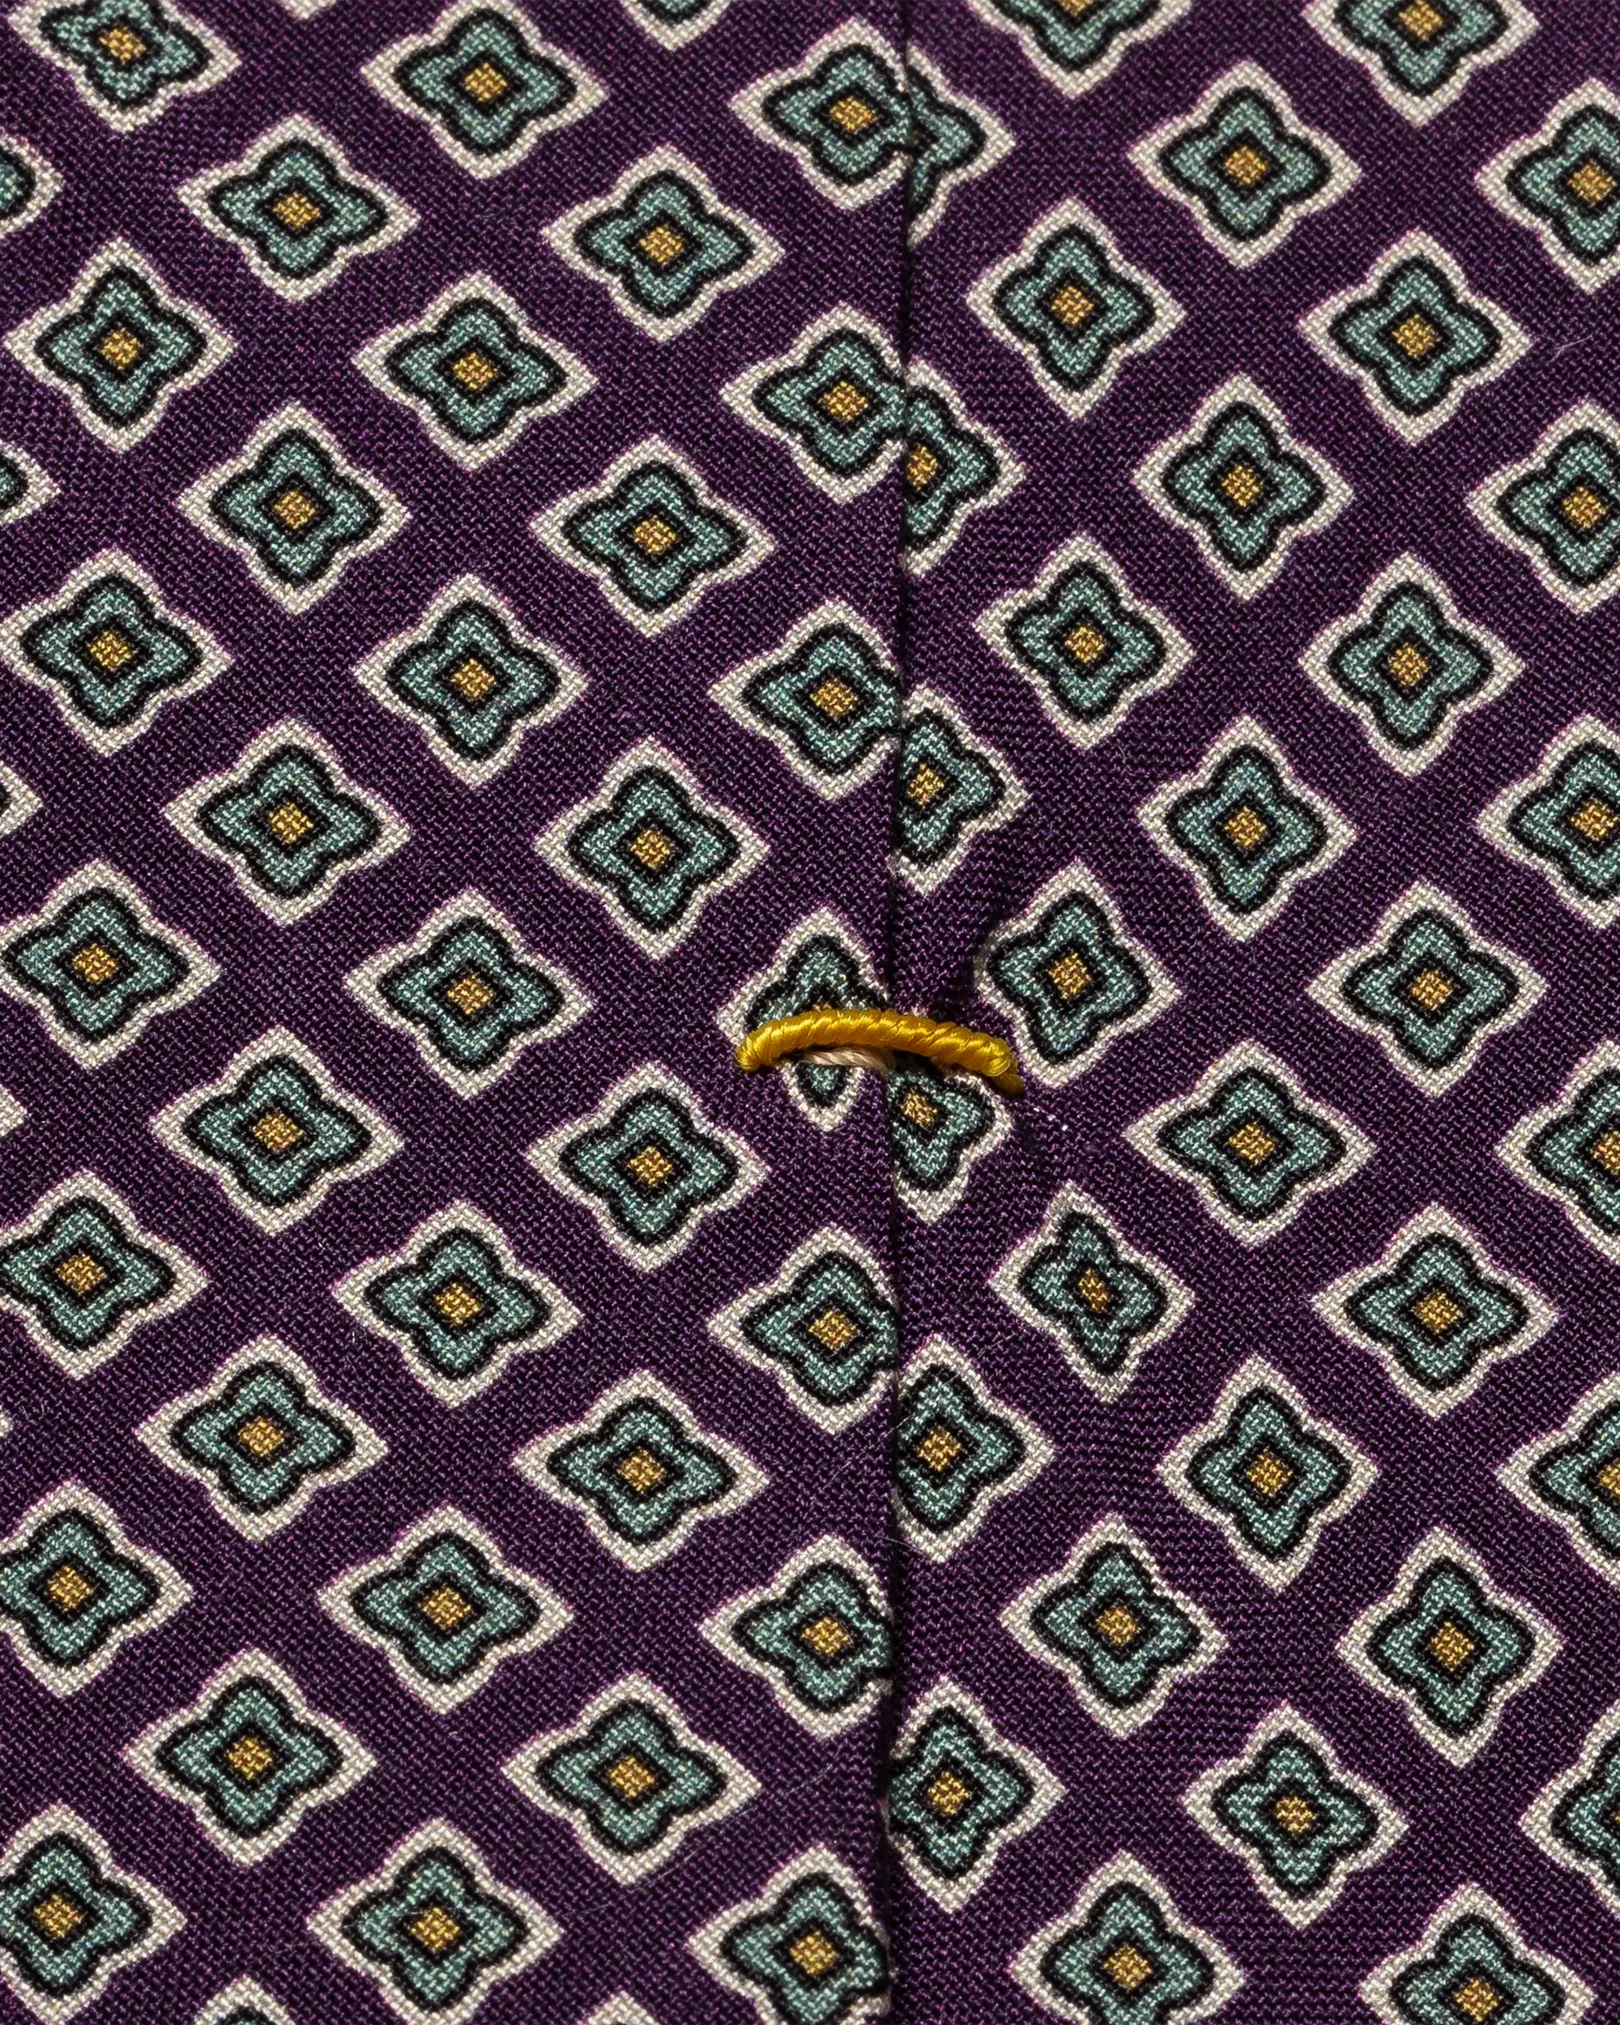 Eton - purple geometric silk tie micro print